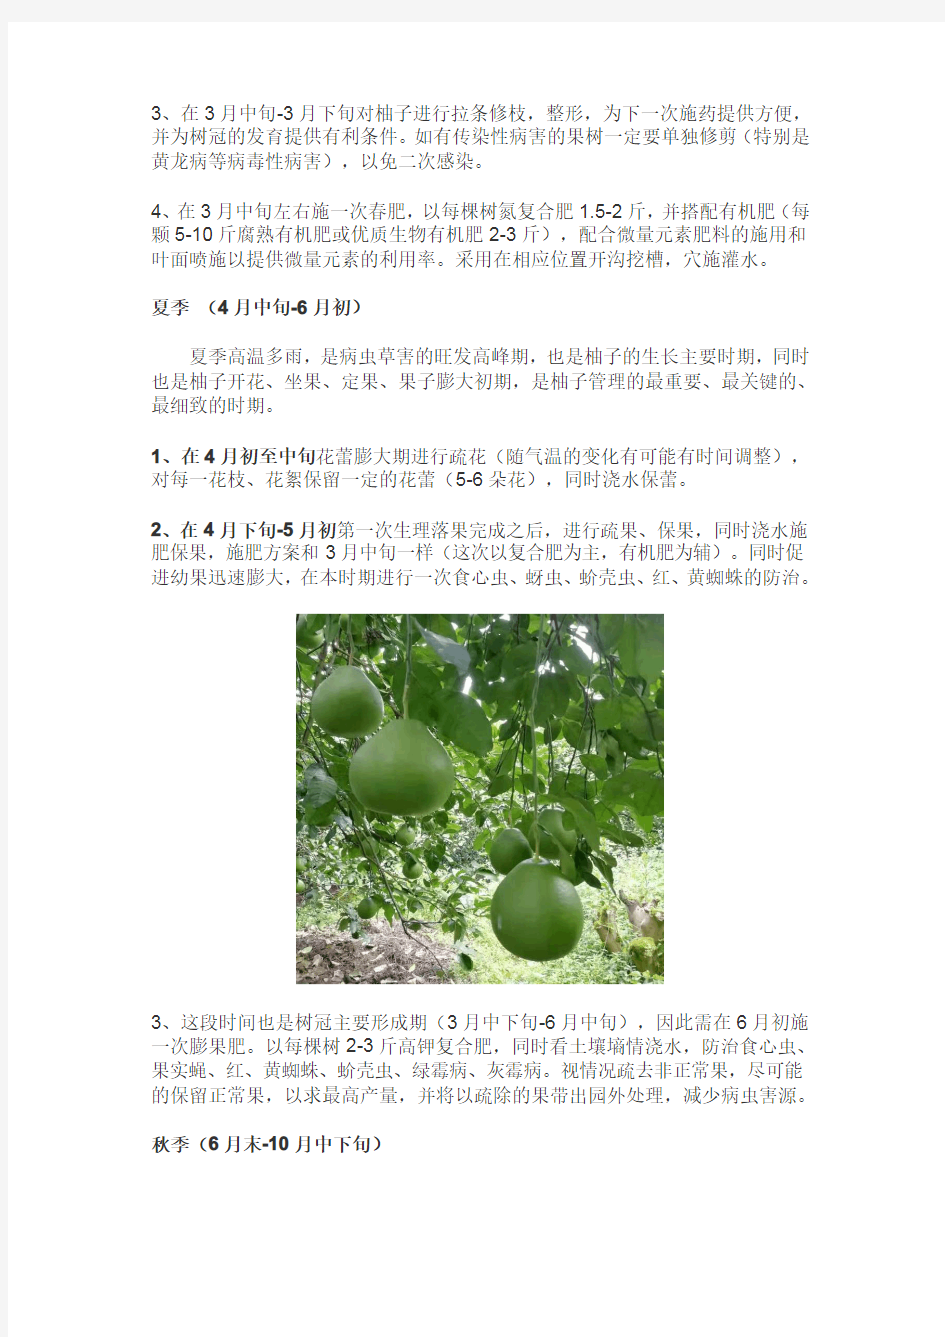 技术分享!柚子种植全年管理方案介绍